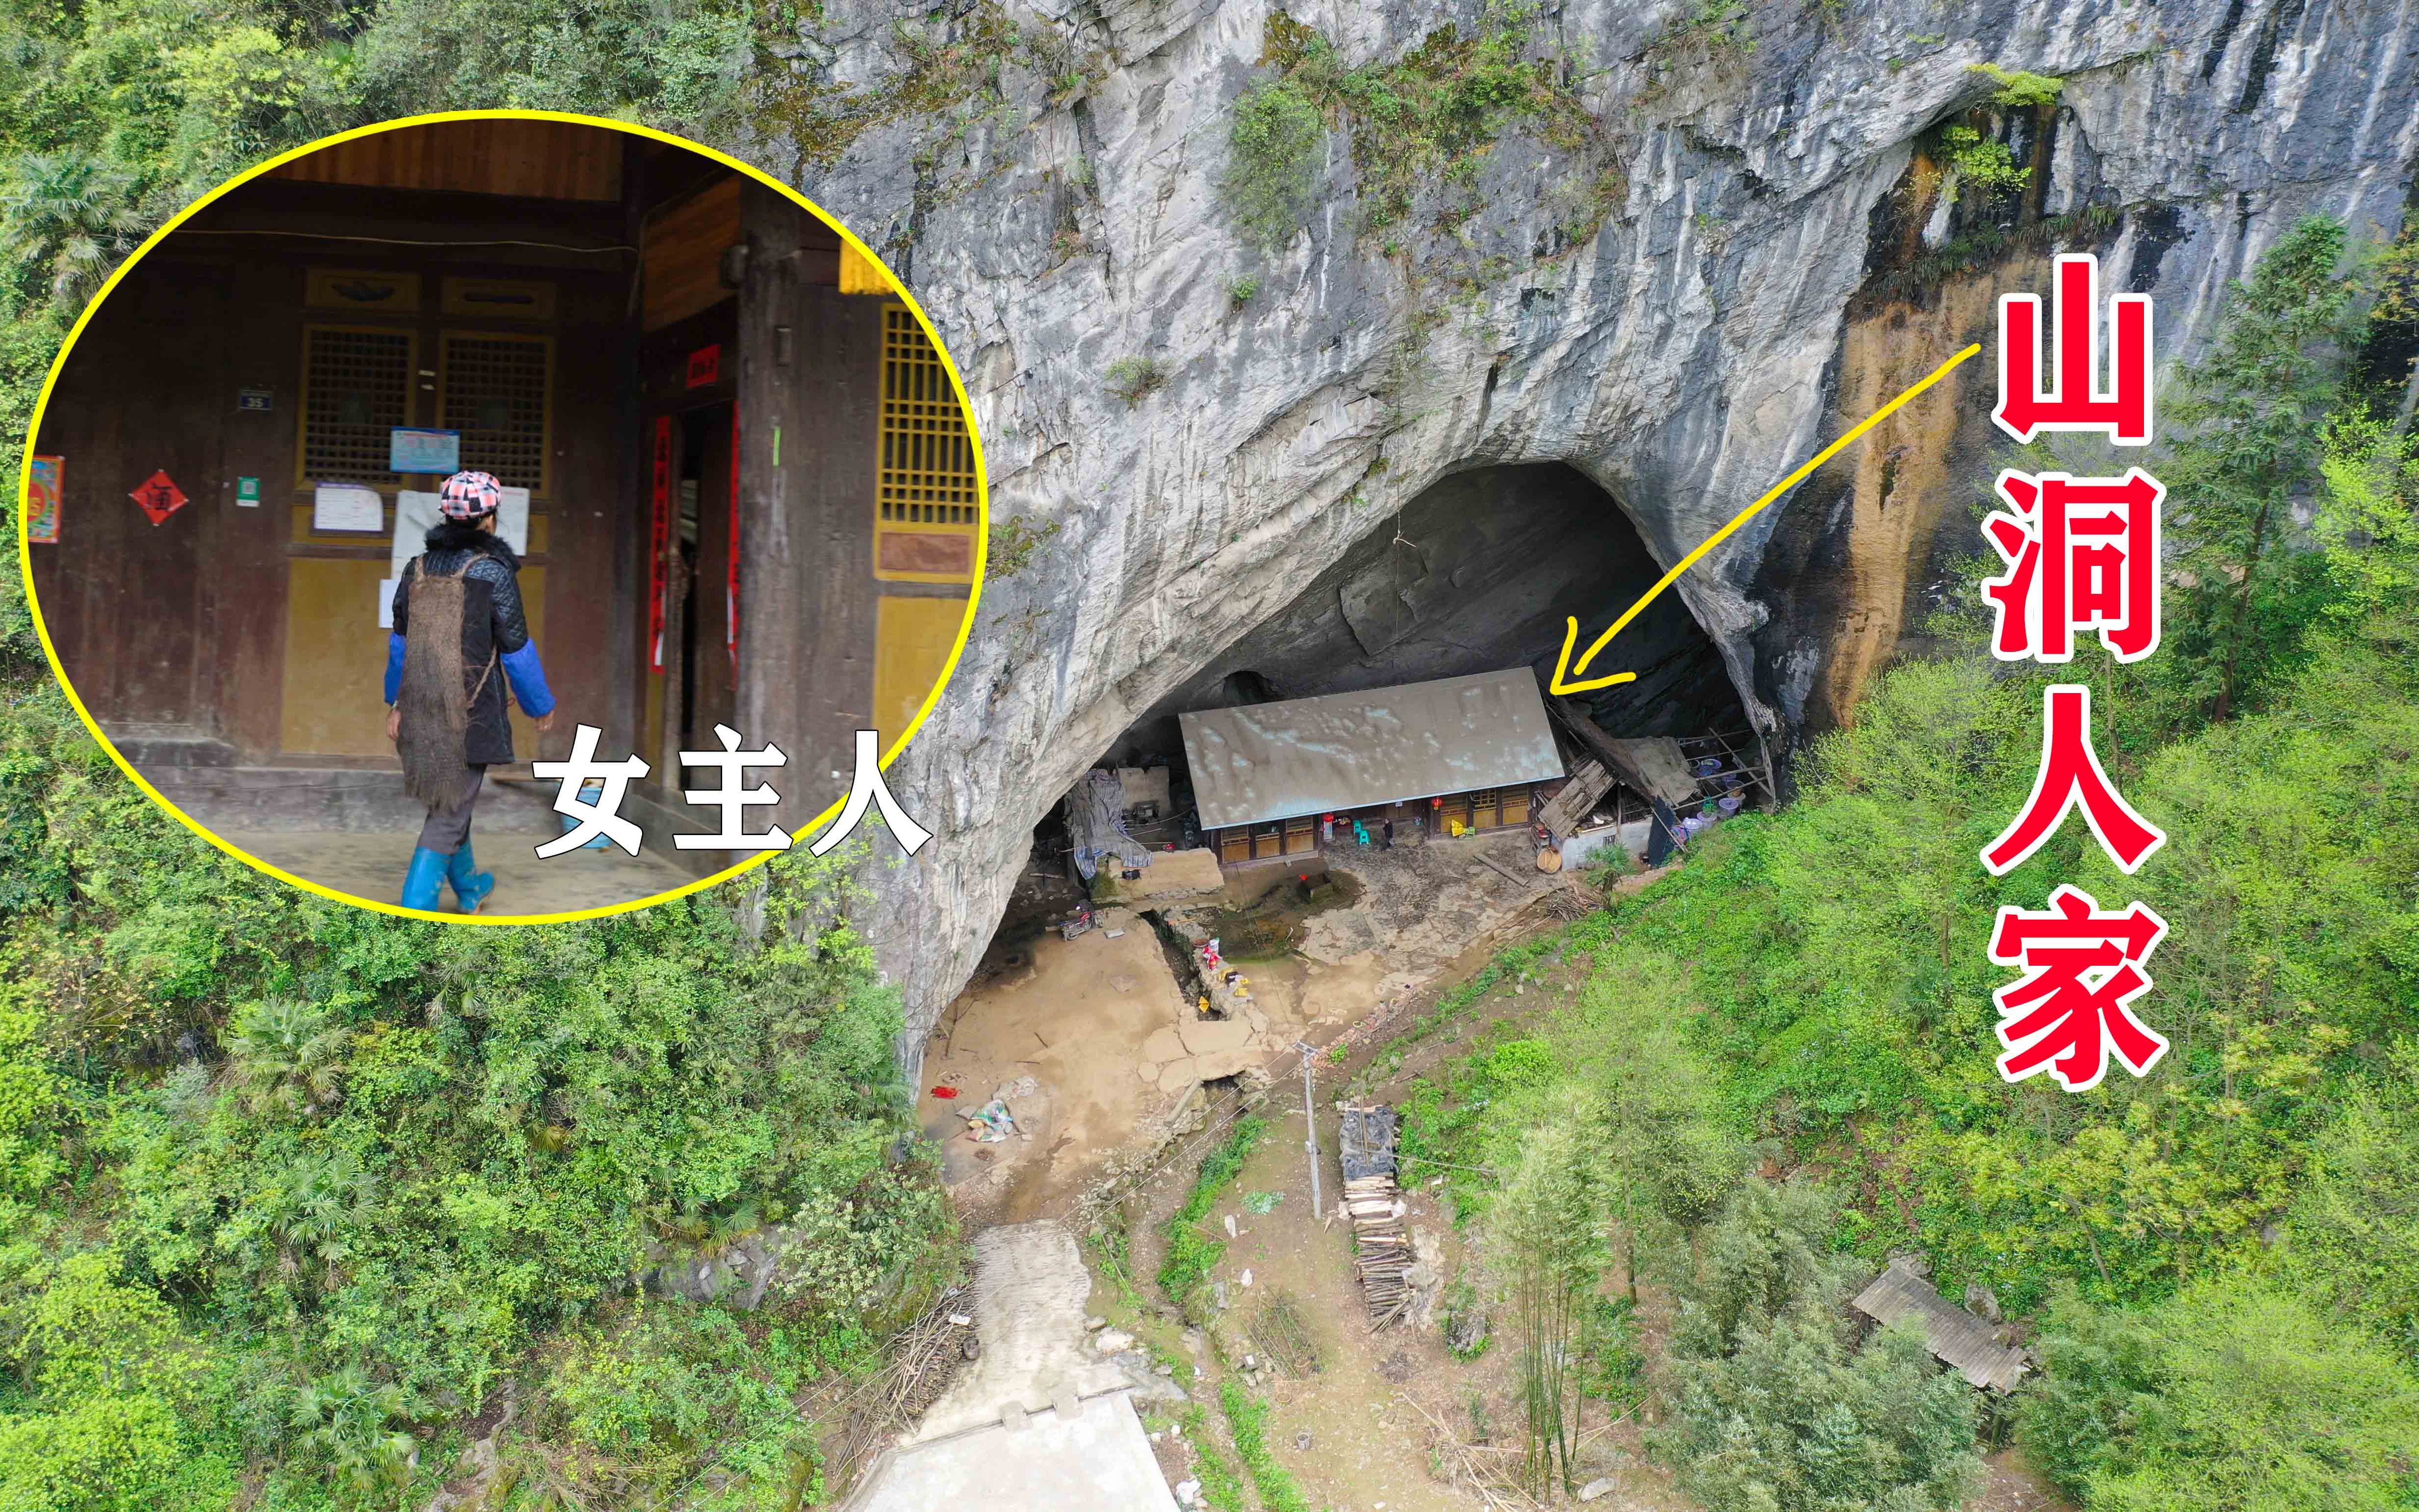 贵州深山一山洞中发现一户人家,5代人居住了100多年,至今不愿搬出